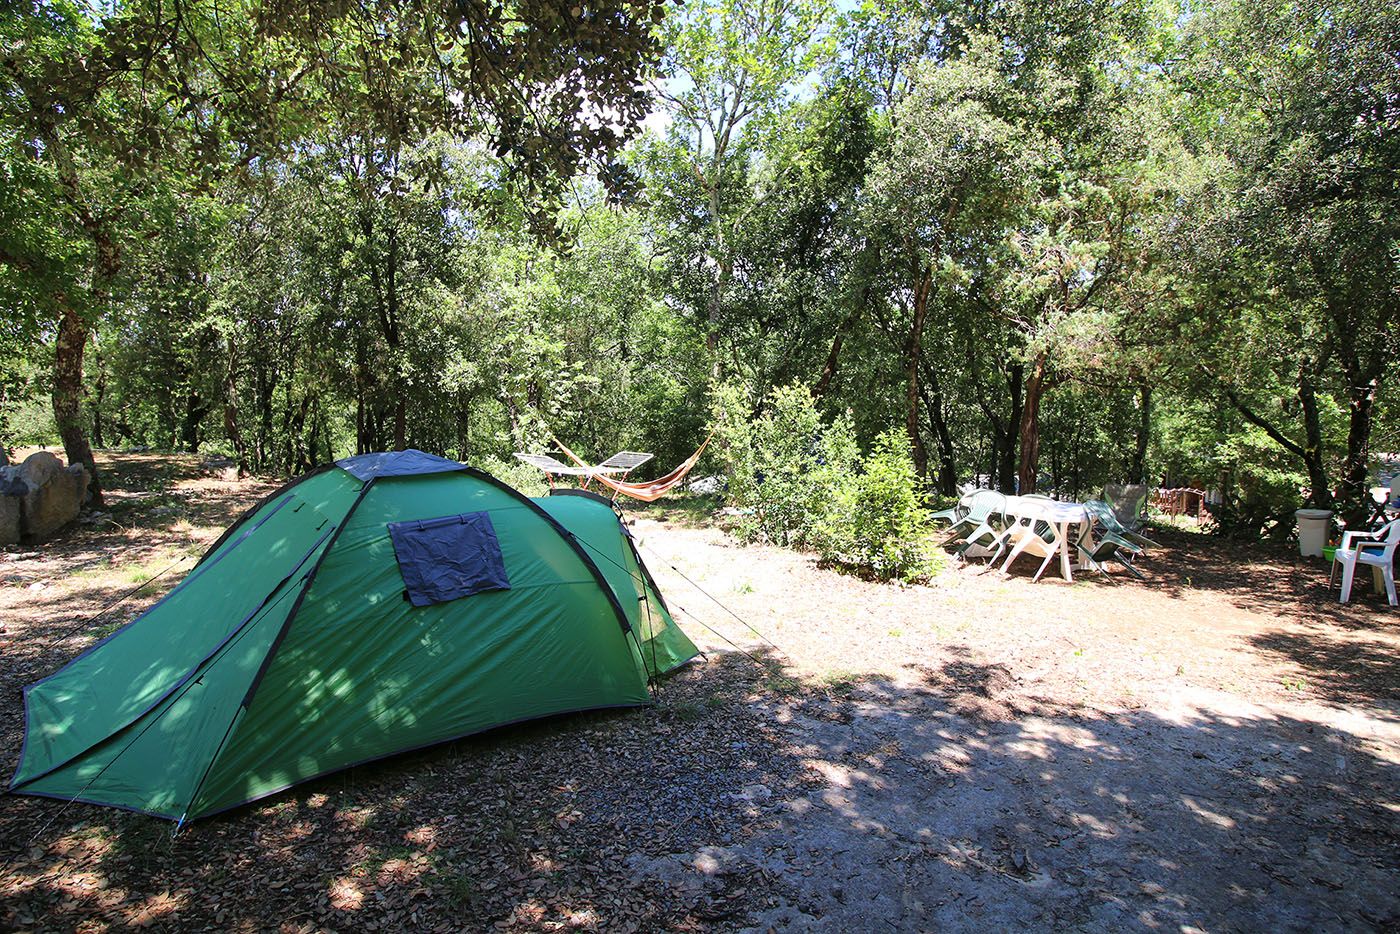 Camping Le Mas de Chavetourte - The campsite pitches